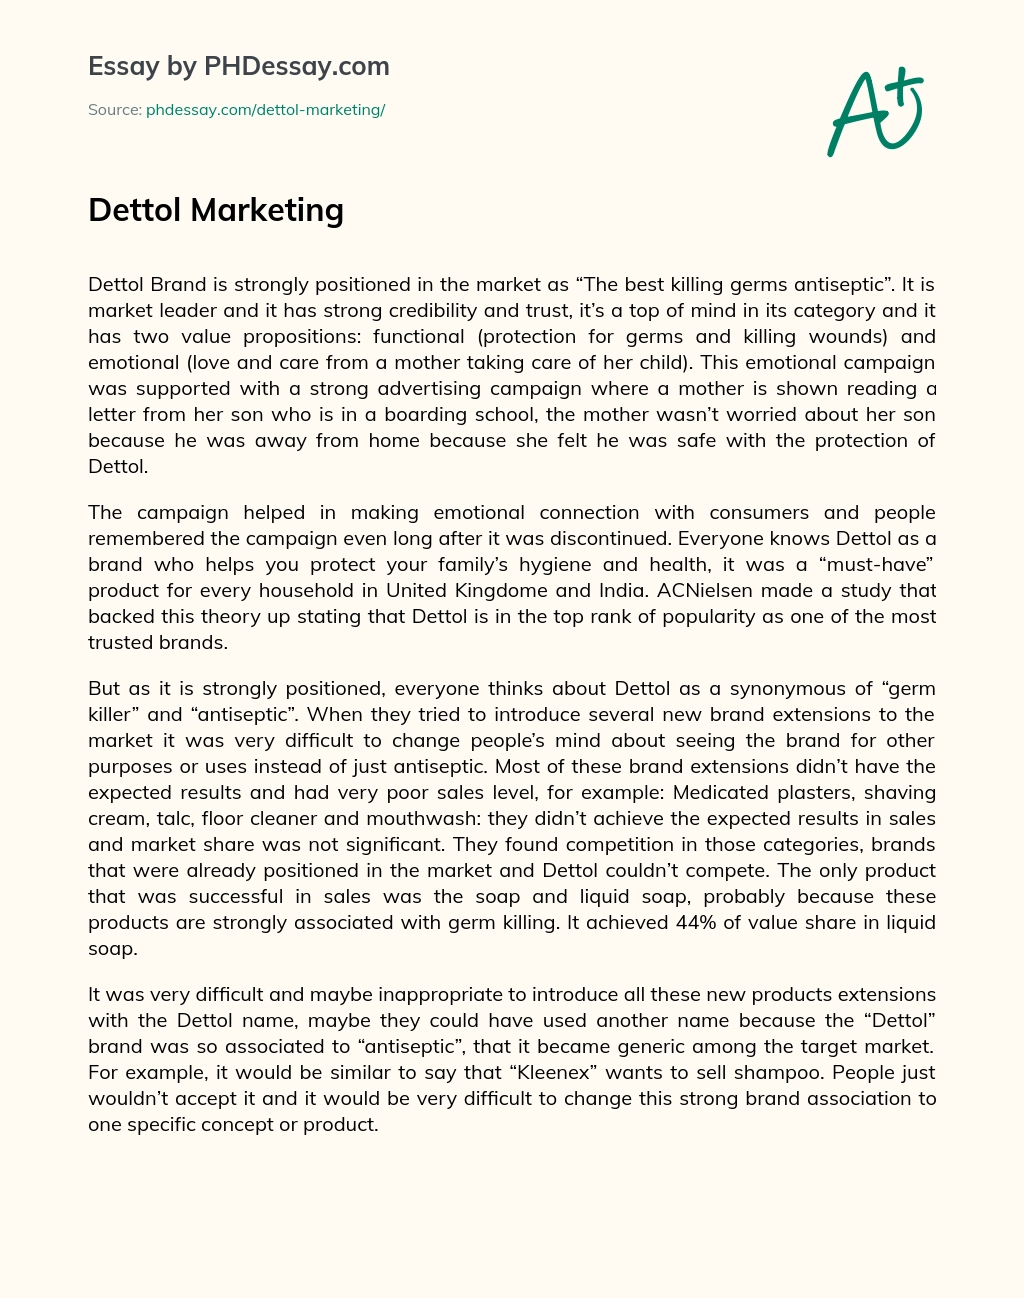 Dettol Marketing essay